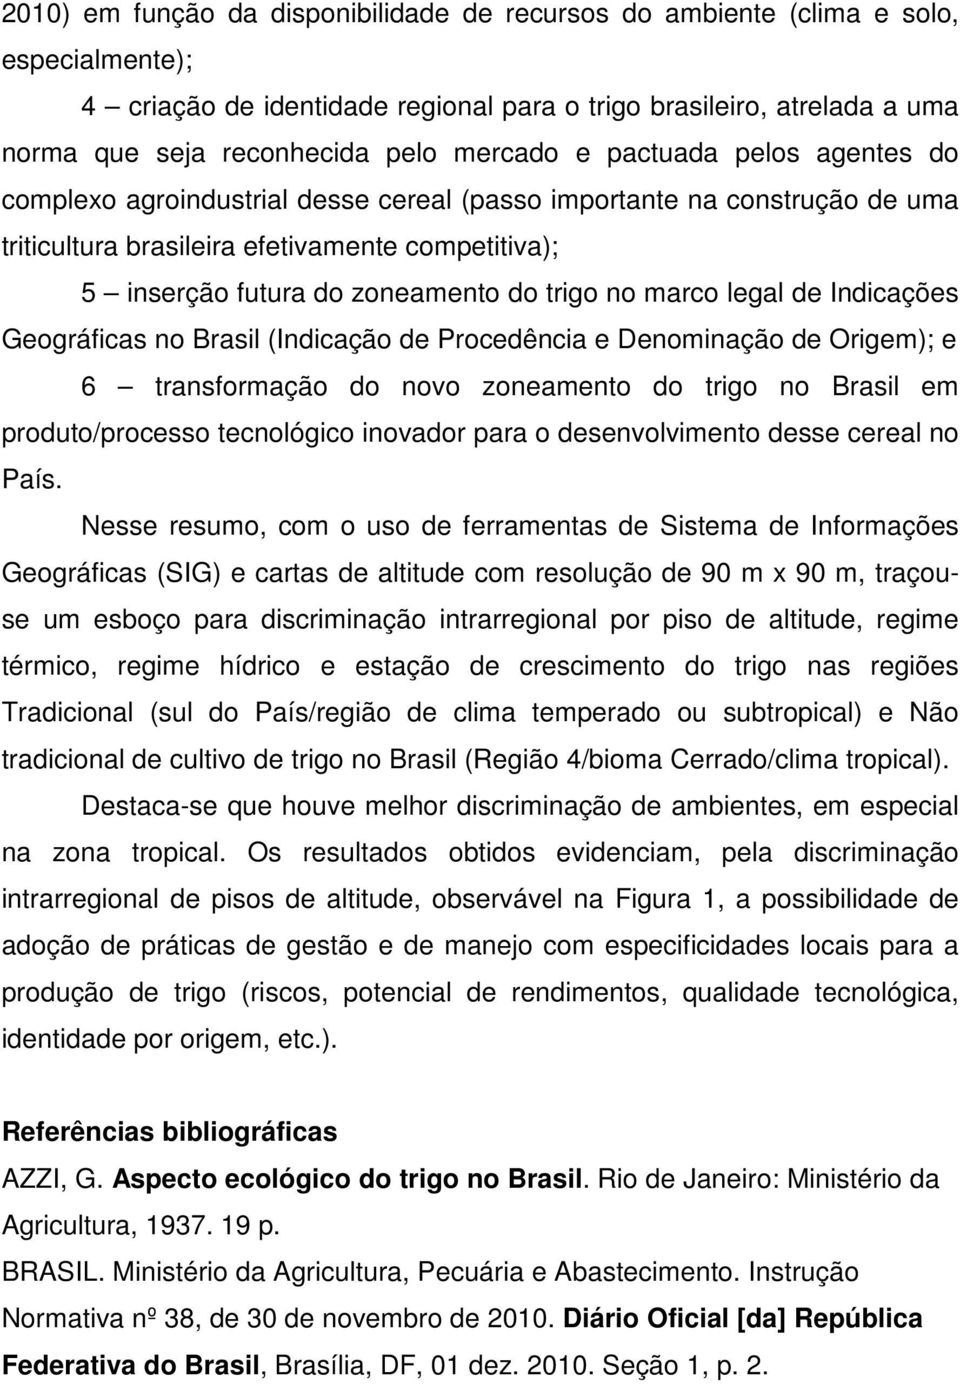 trigo no marco legal de Indicações Geográficas no Brasil (Indicação de Procedência e Denominação de Origem); e 6 transformação do novo zoneamento do trigo no Brasil em produto/processo tecnológico